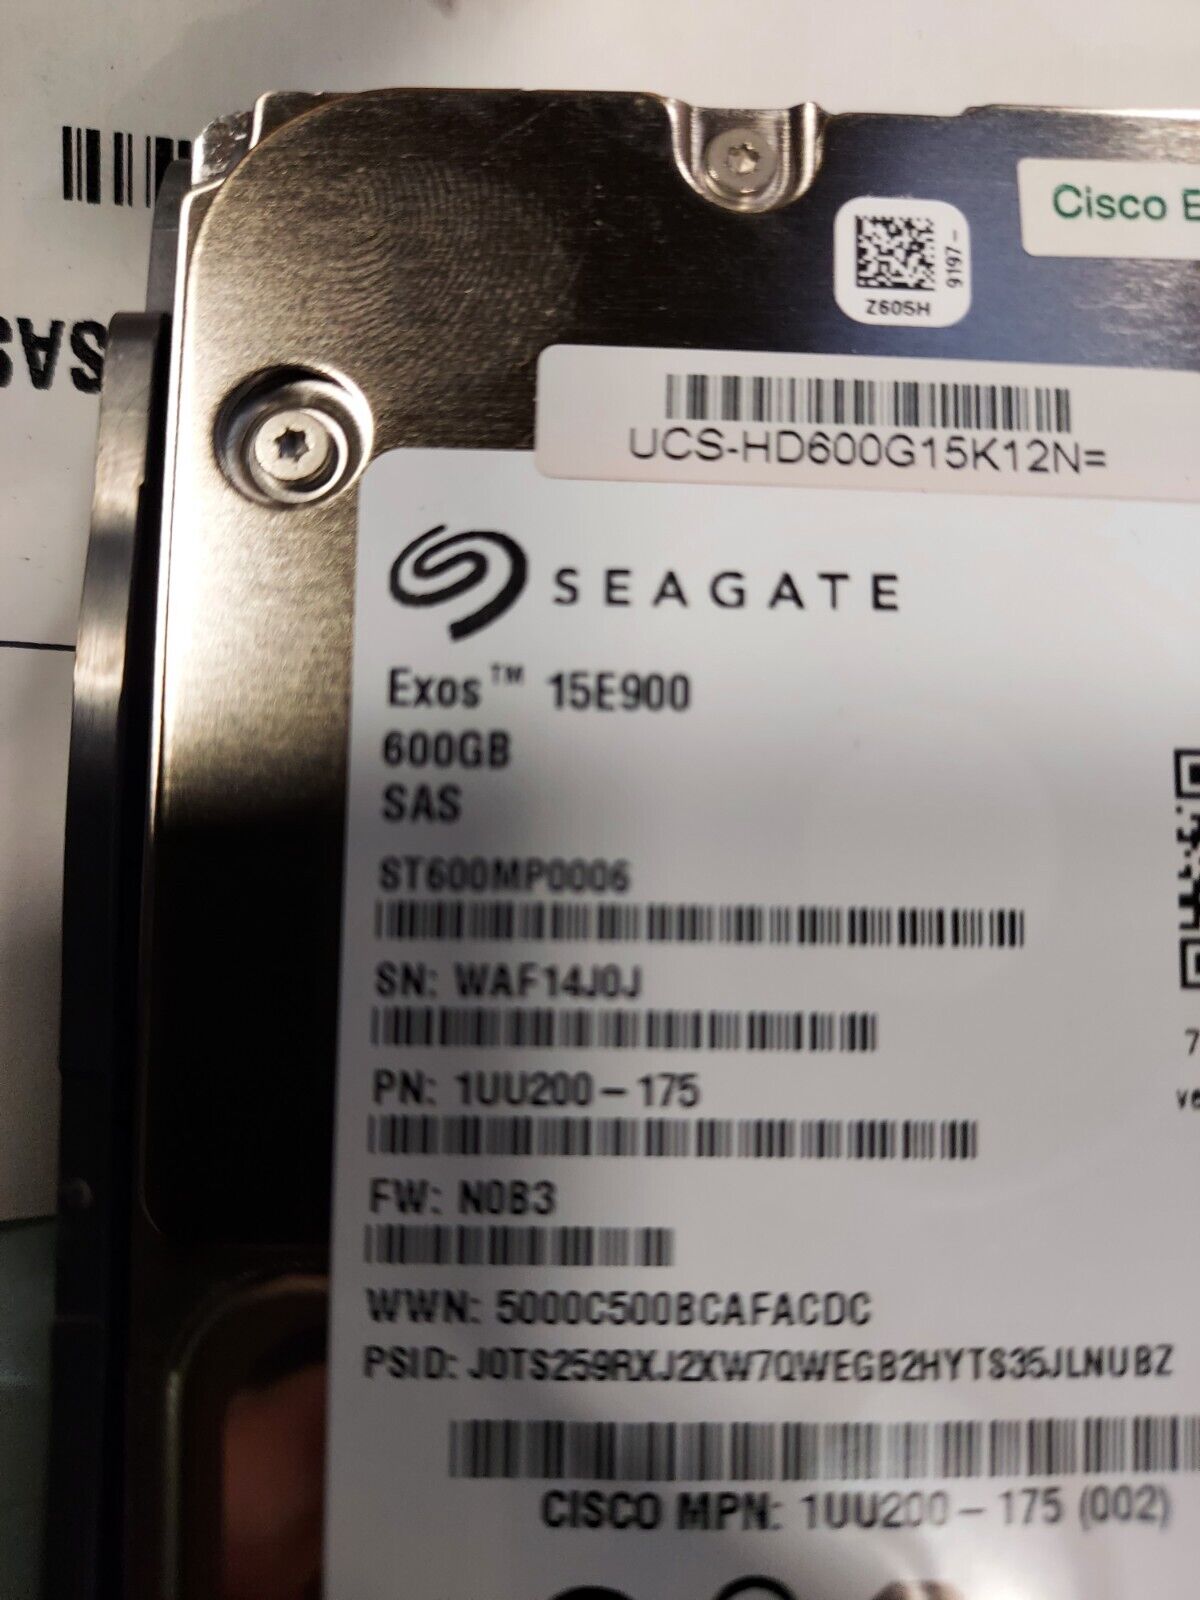 SEAGATE EXOS 15E900 SERIES 600GB HDD